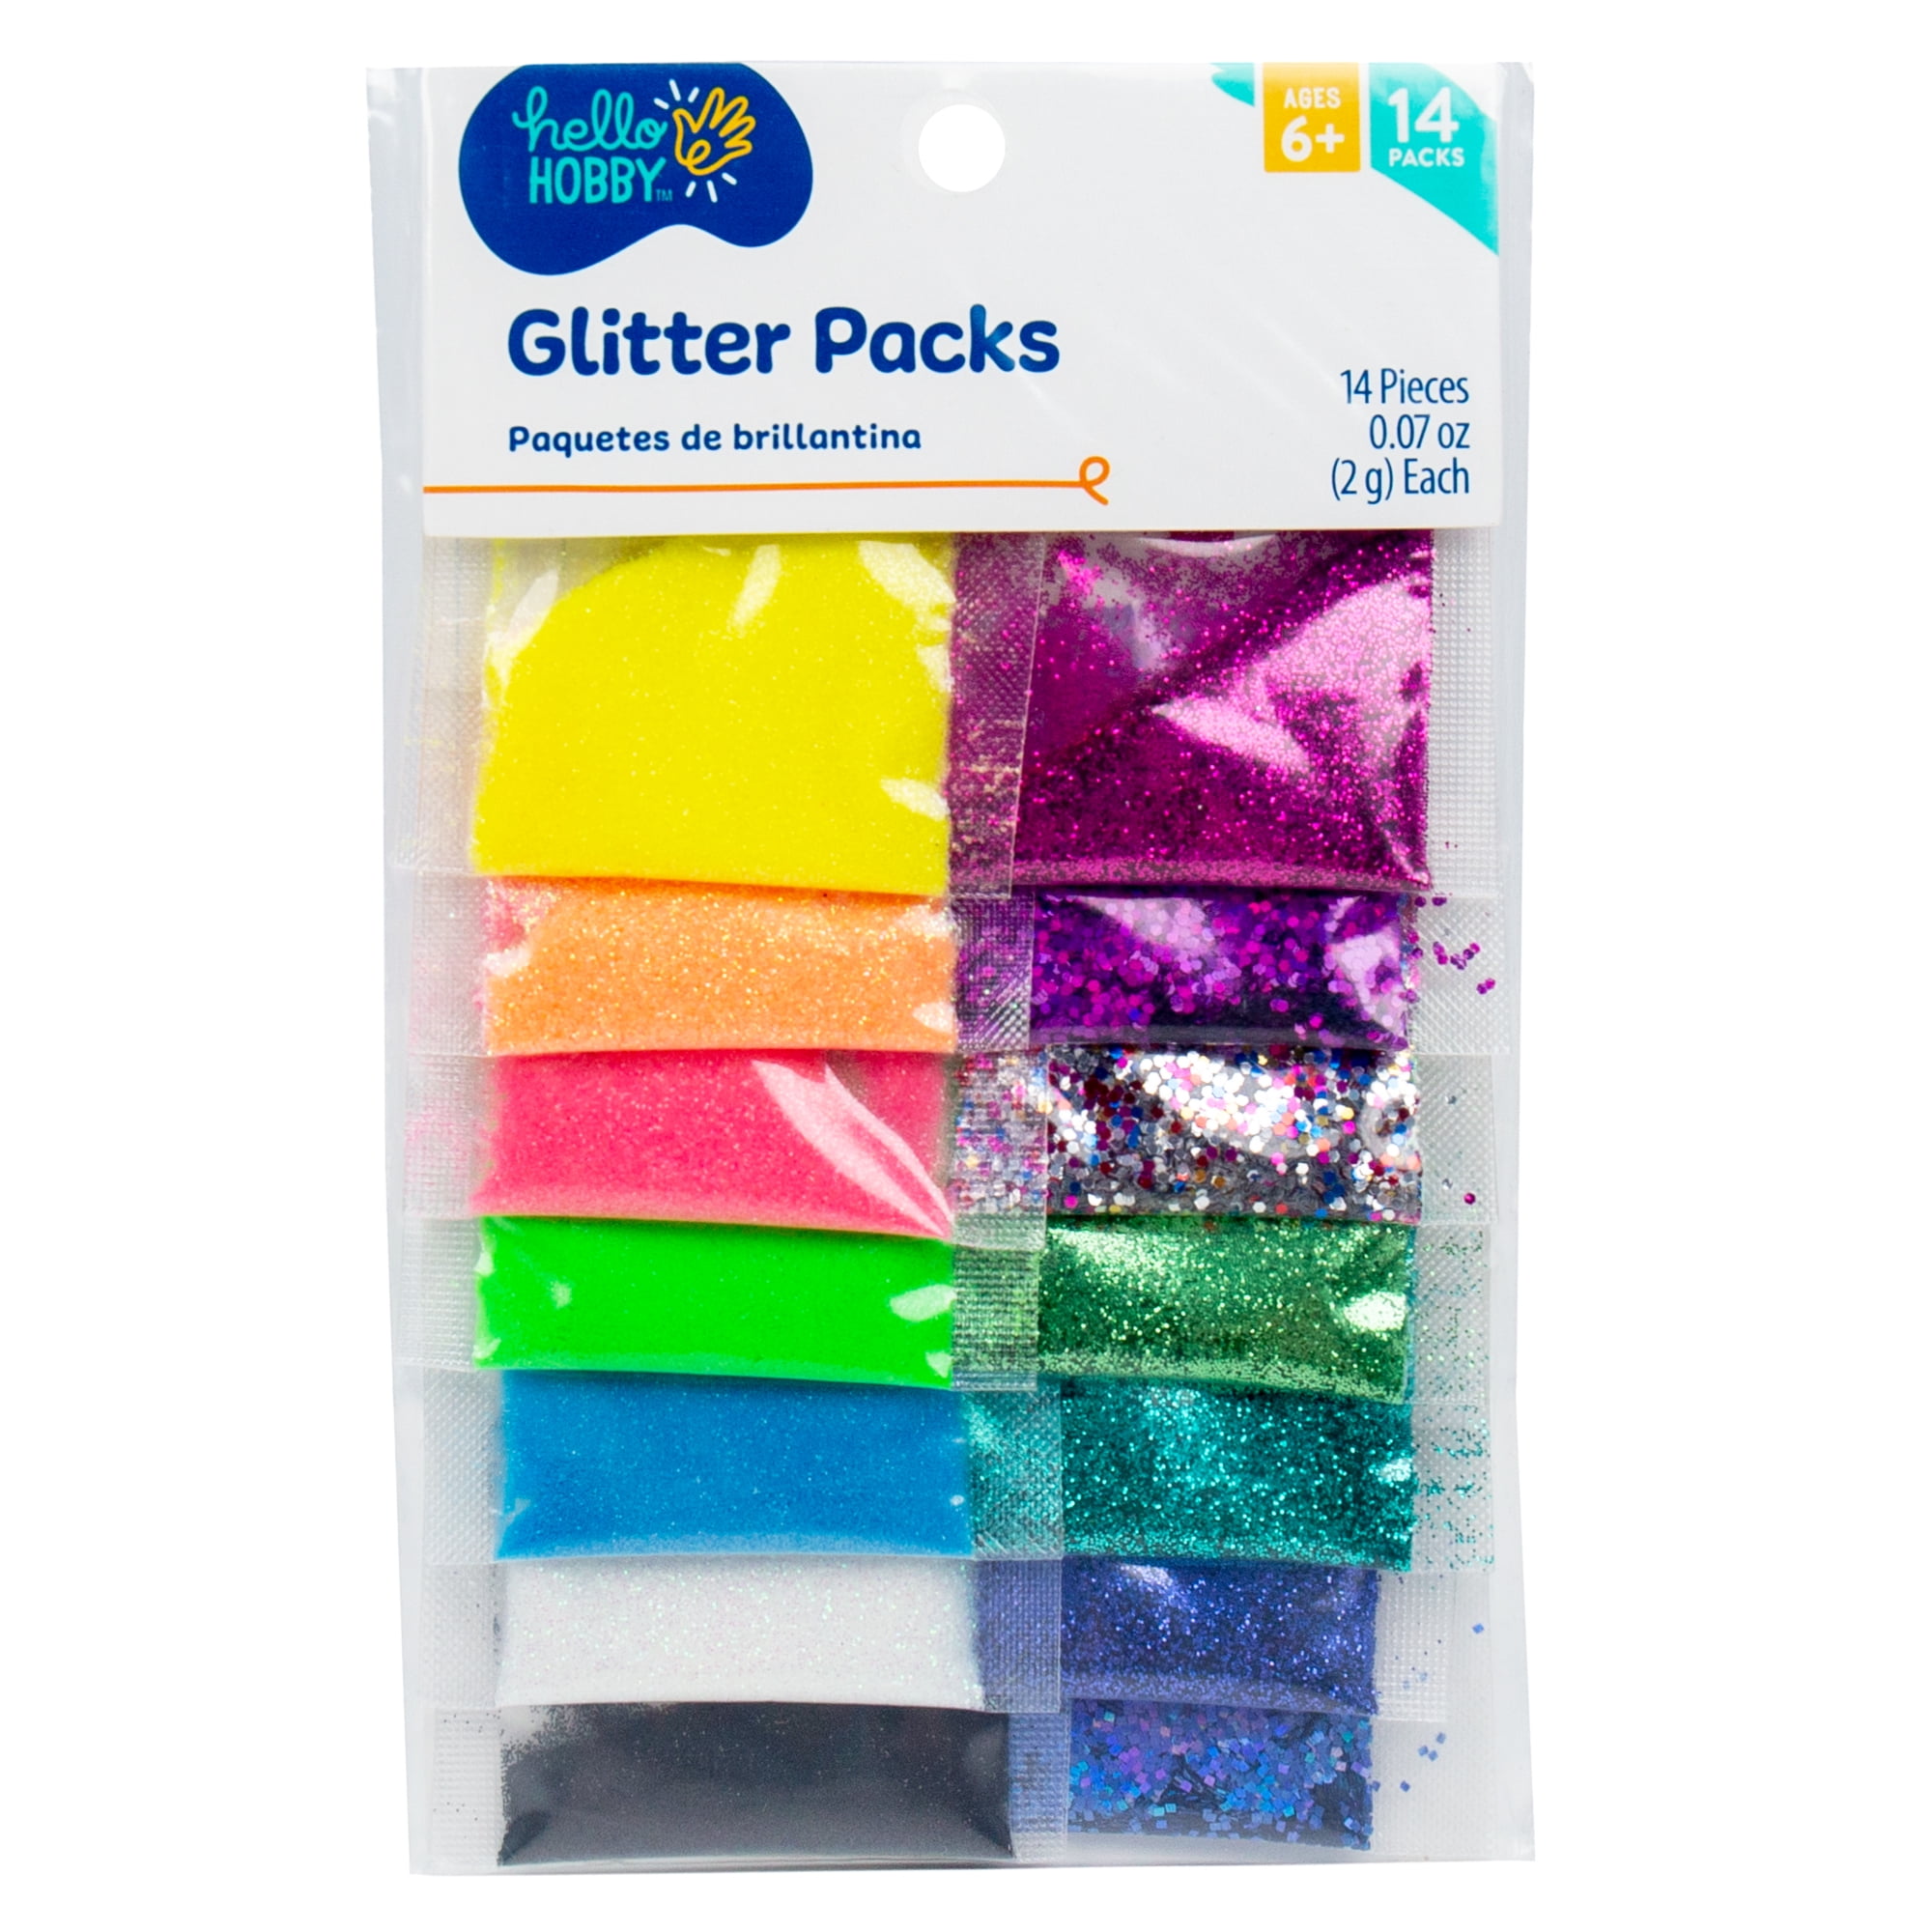 Hello Hobby Glitter Packs, 16-Pack